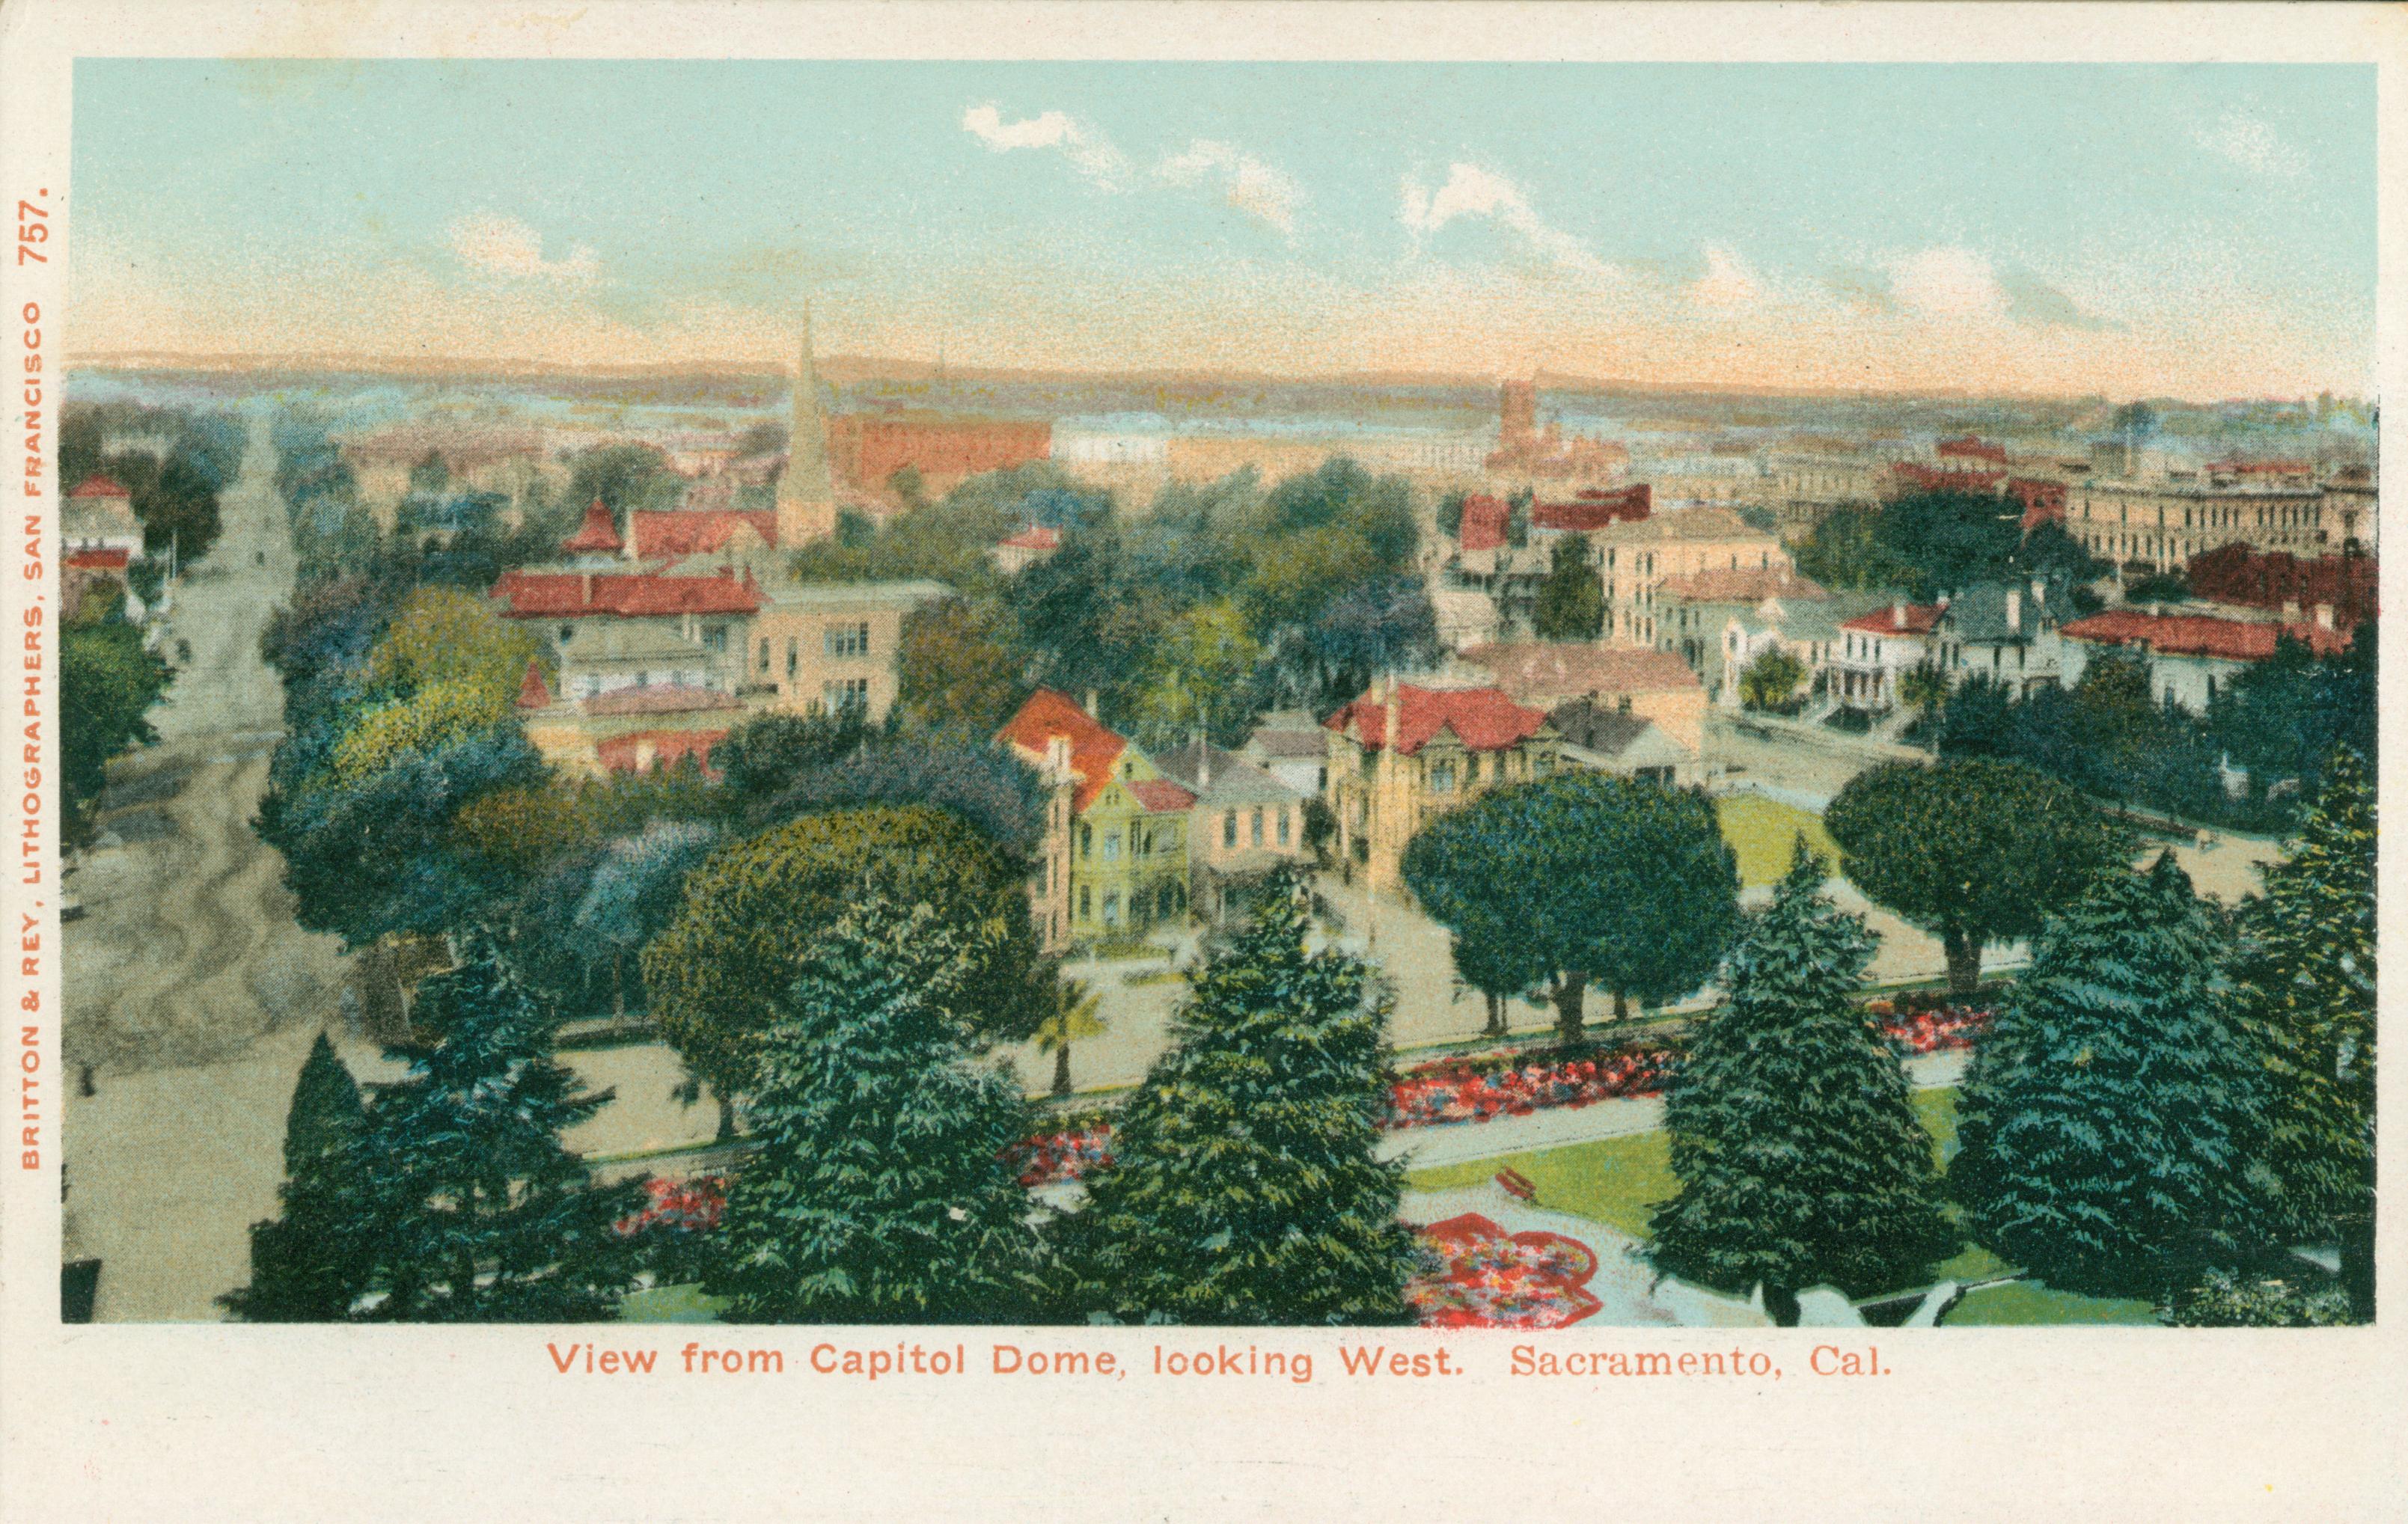 This postcard shows a bird's eye view of Sacramento.